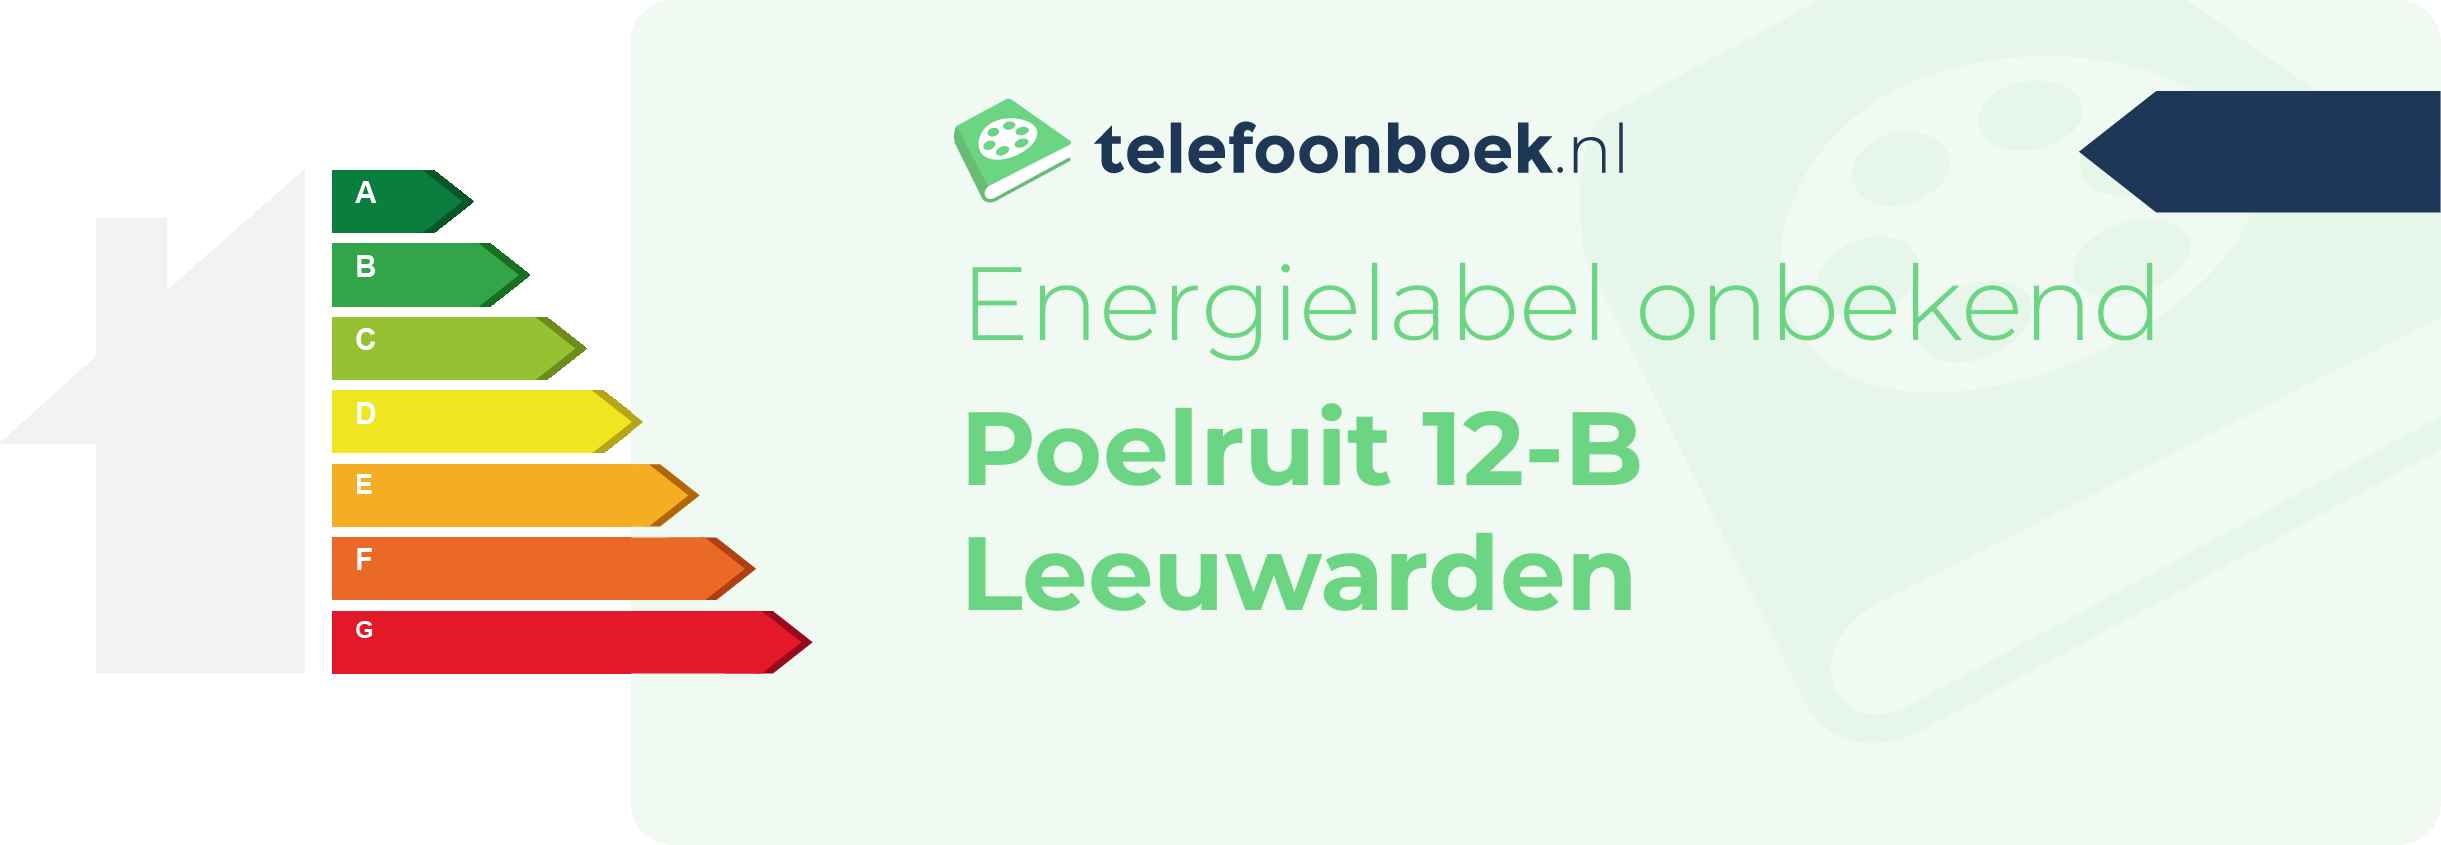 Energielabel Poelruit 12-B Leeuwarden